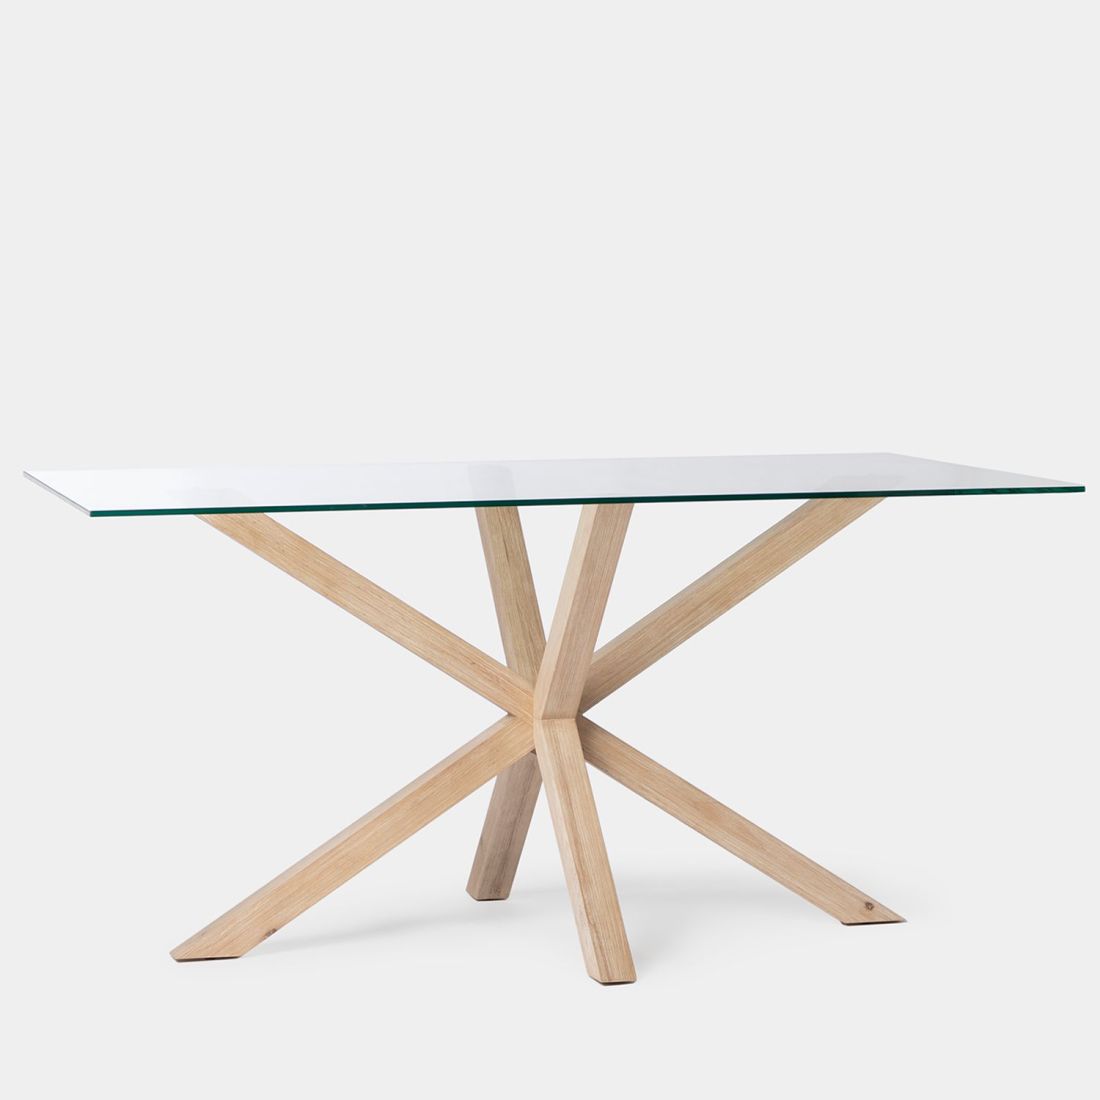 La mesa de comedor rectangular Emerald es la mesa perfecta para aportar elegancia y sofisticación a tu salón